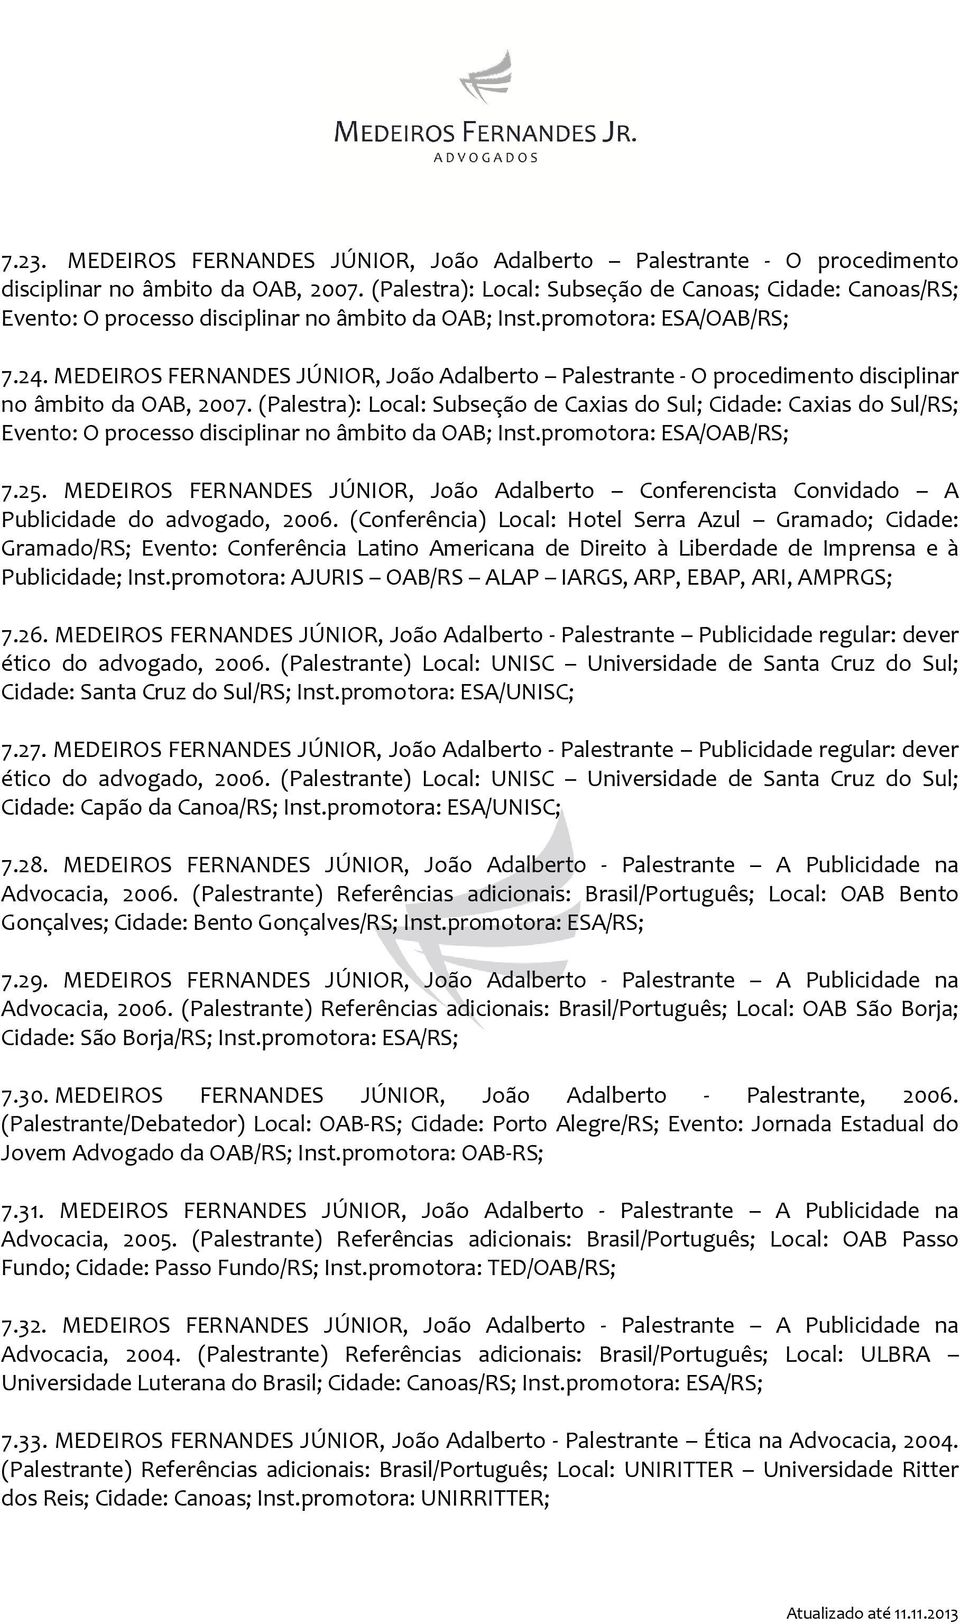 MEDEIROS FERNANDES JÚNIOR, João Adalberto Palestrante - O procedimento disciplinar no âmbito da OAB, 2007.